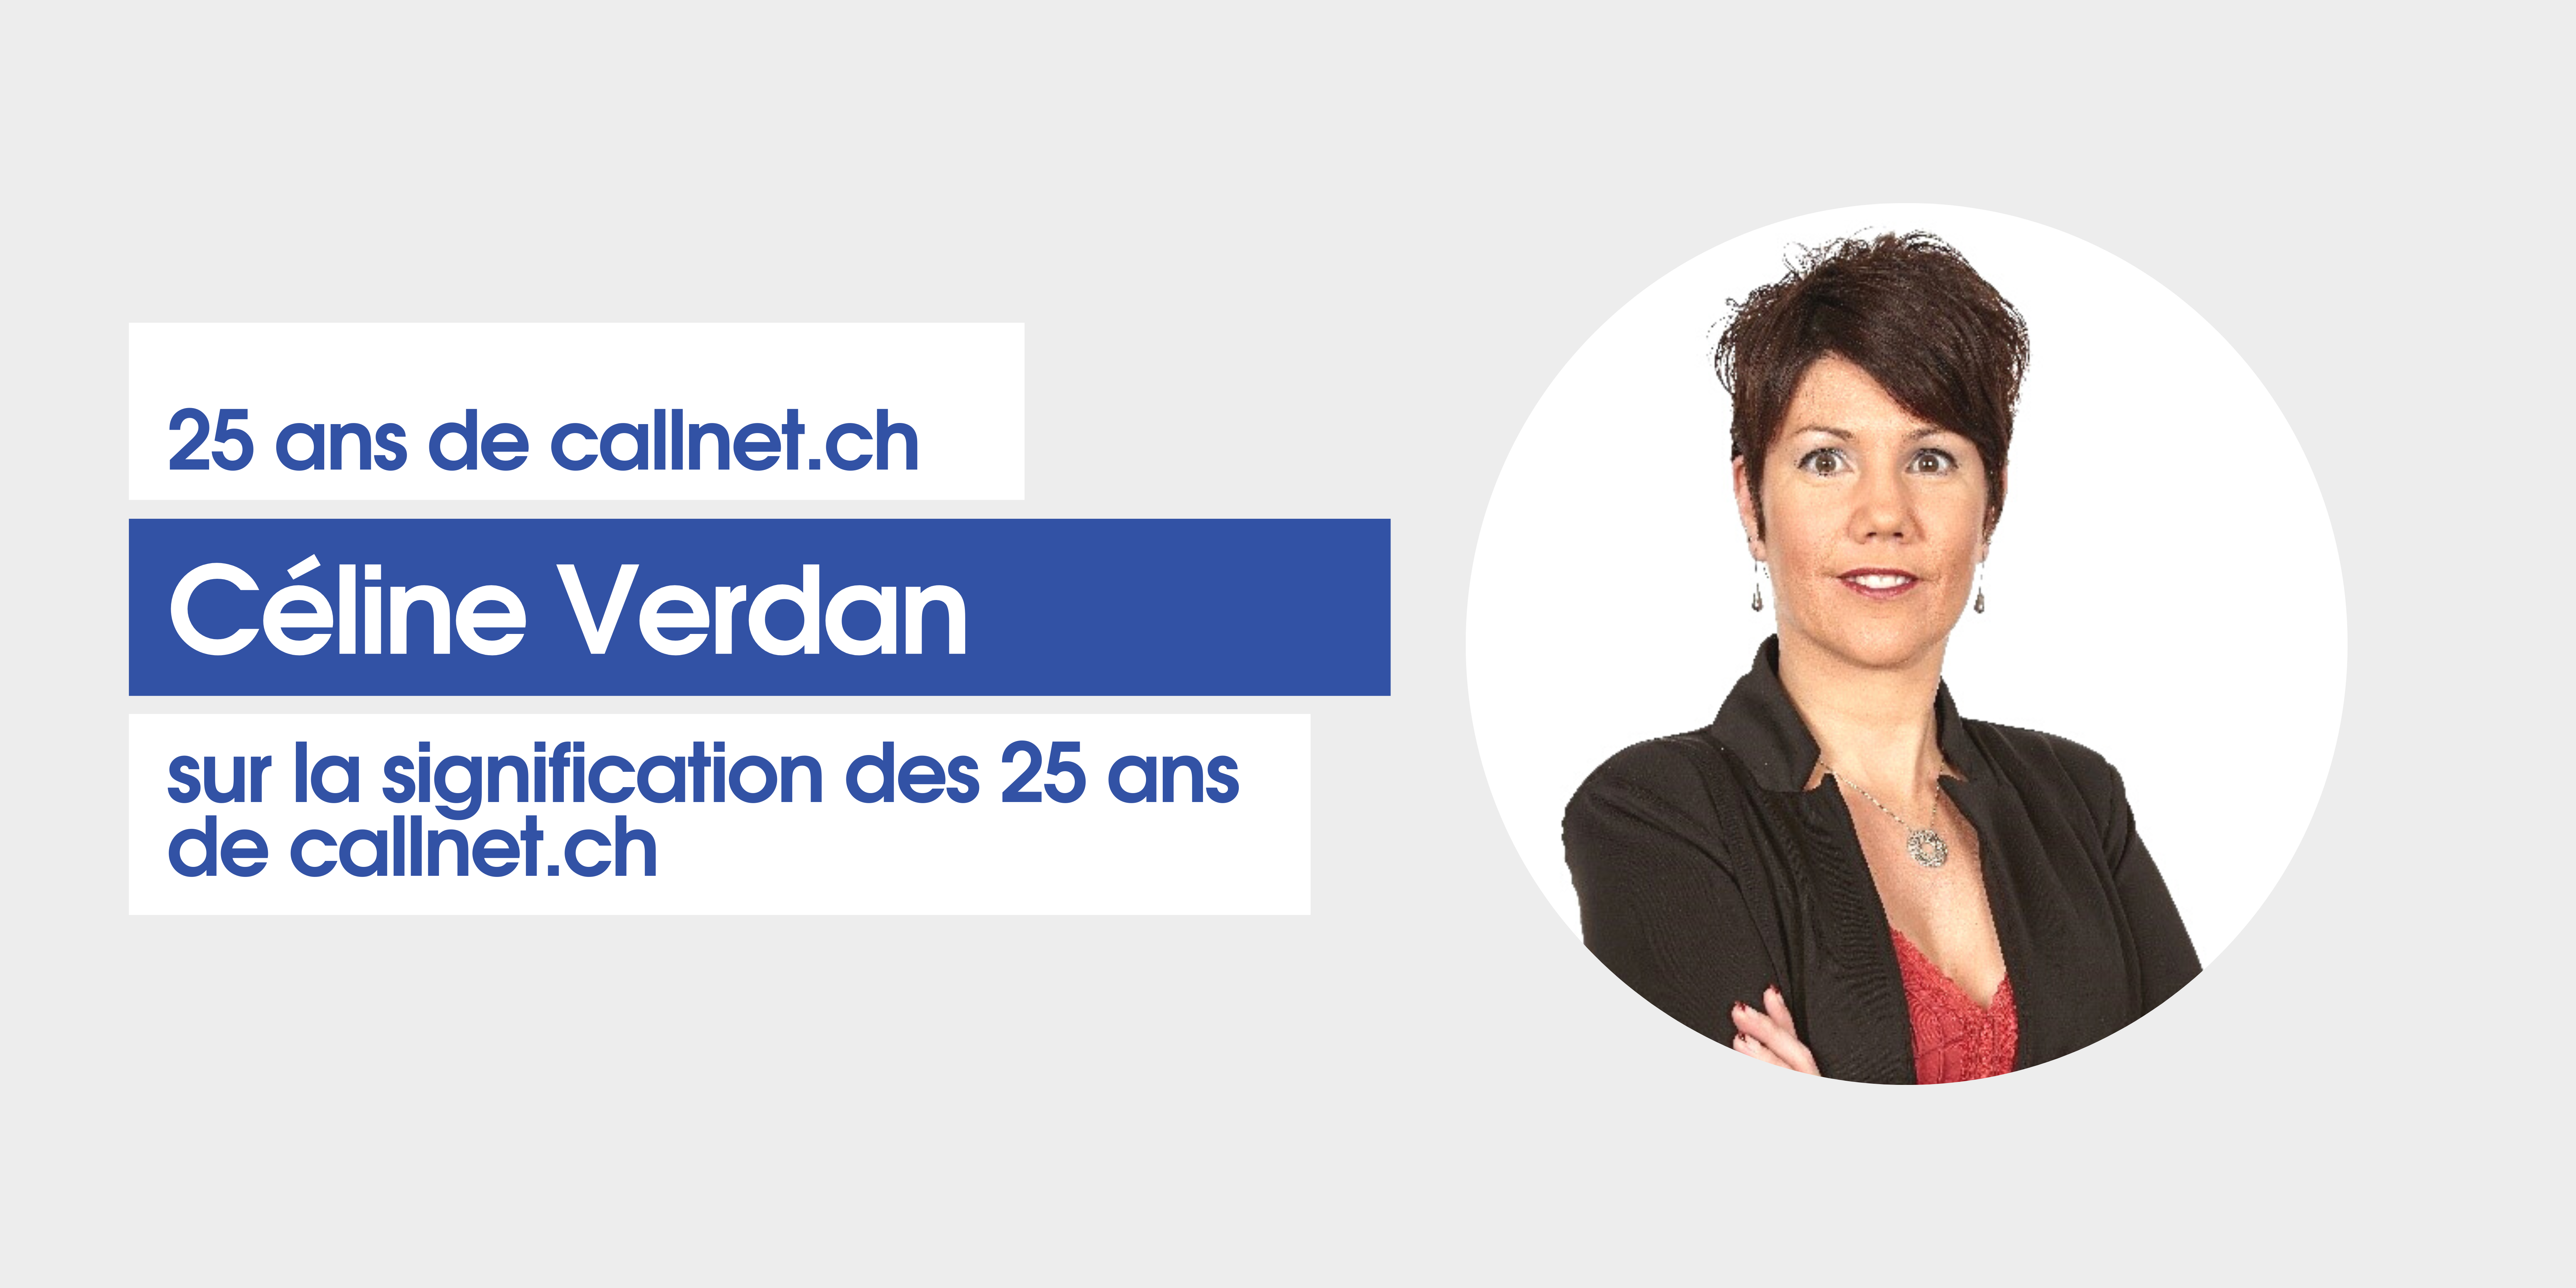 Céline Verdan sur les 25 ans de callnet.ch